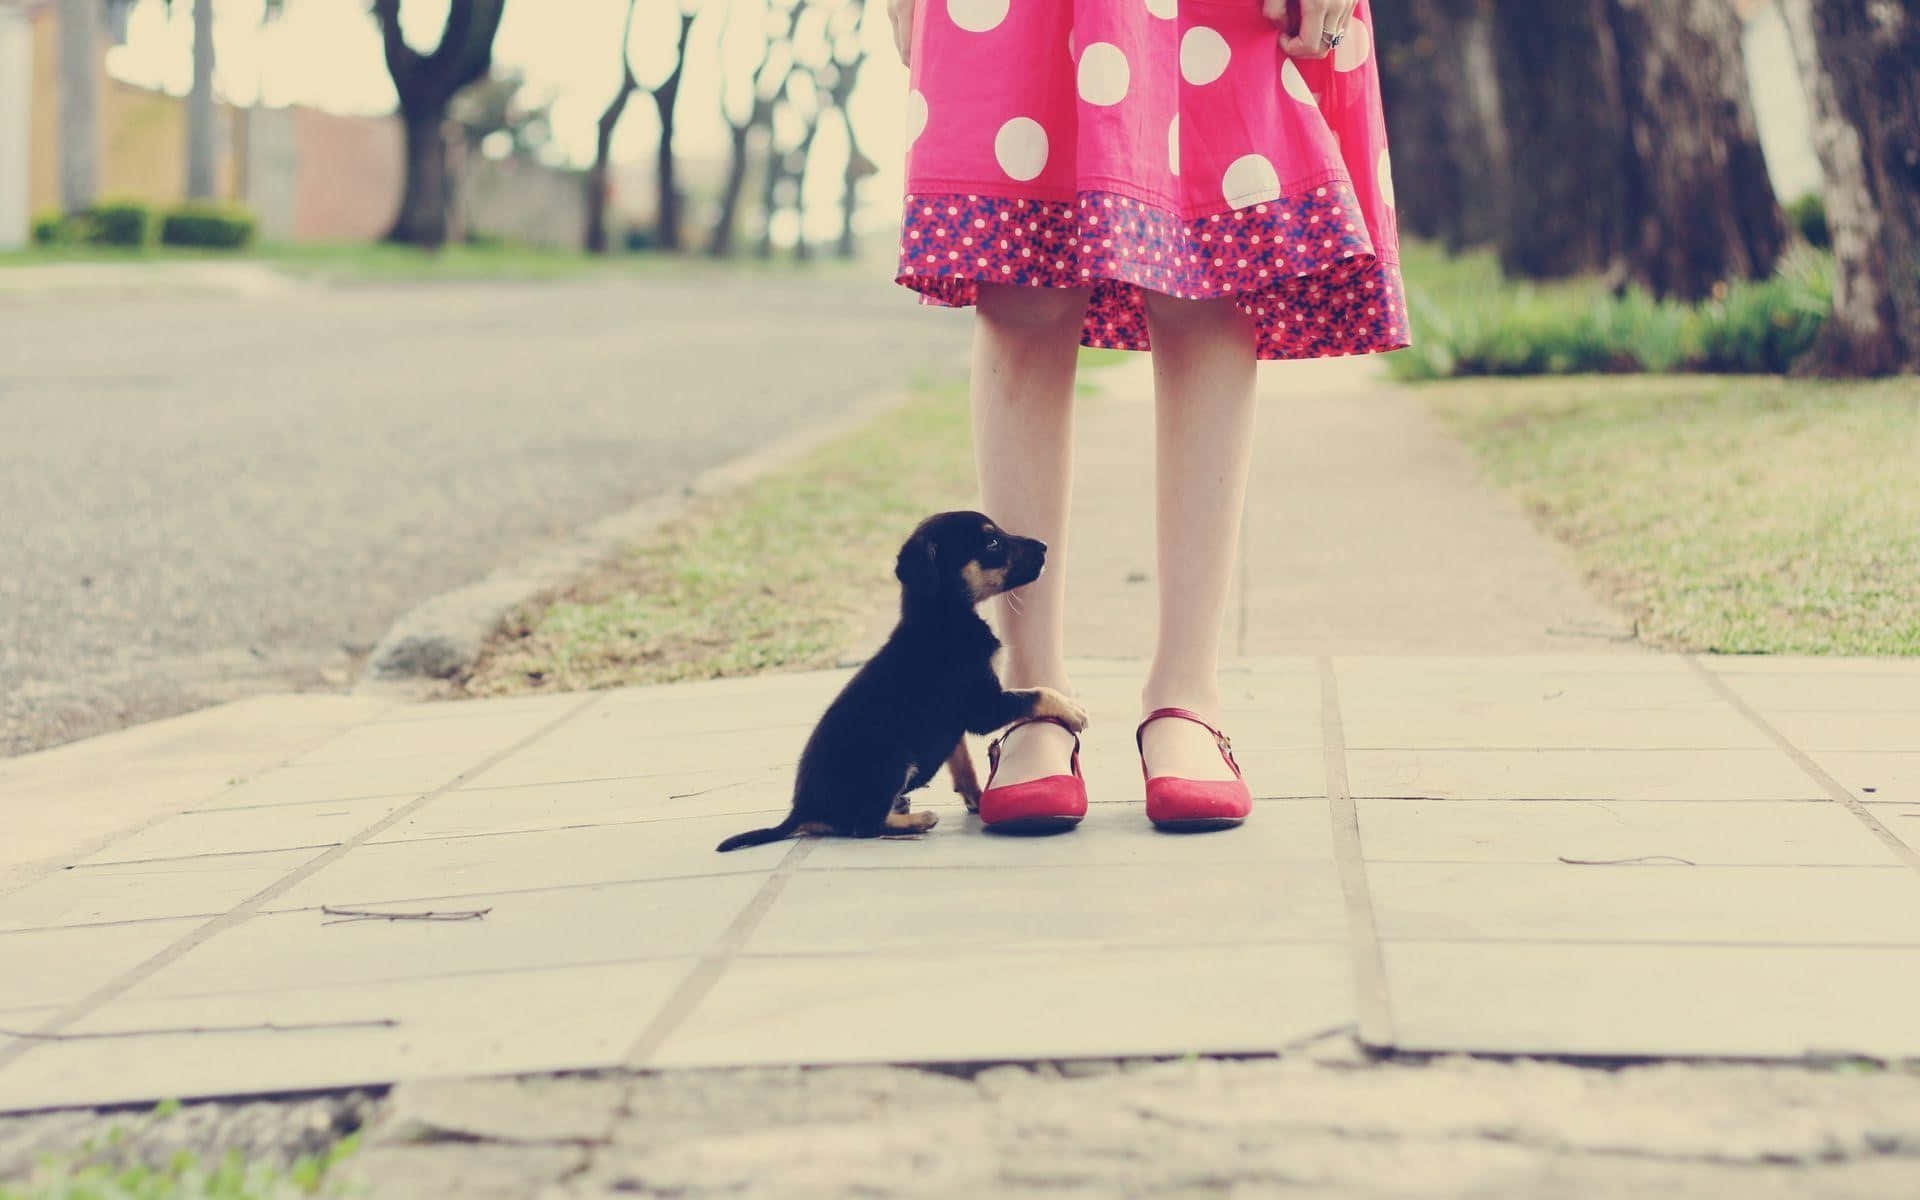 Girlin Polka Dot Dressand Puppyon Pathway.jpg Wallpaper